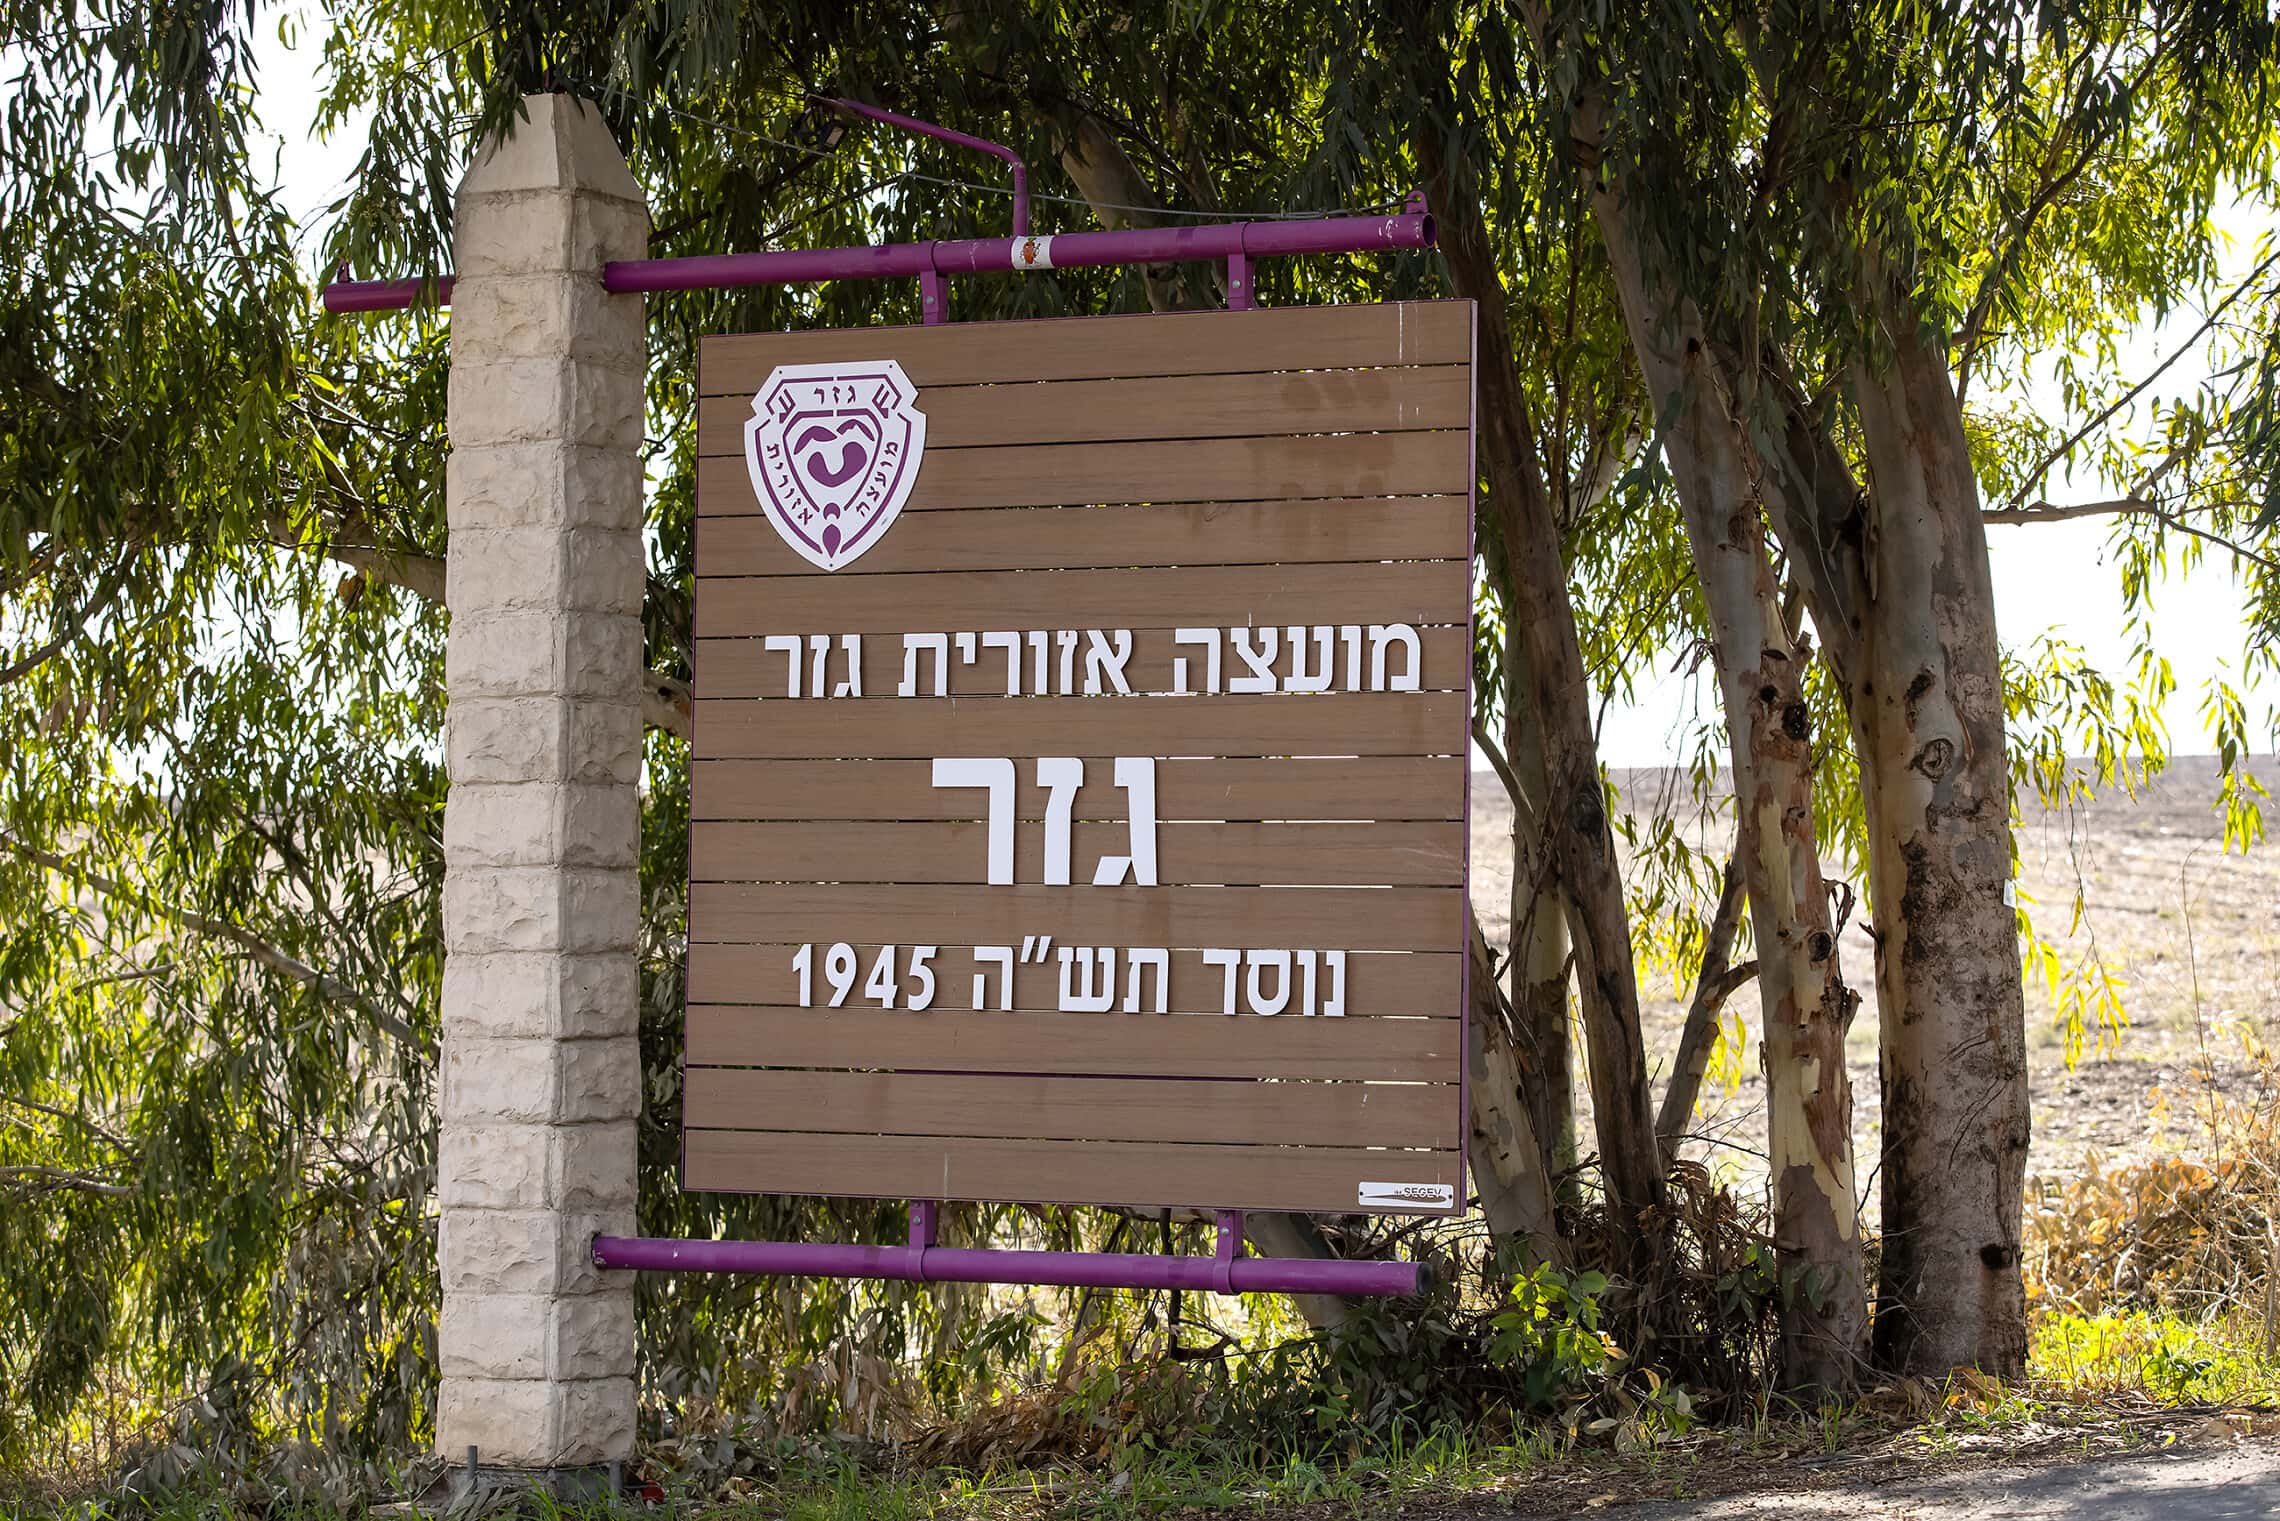 שלט הכניסה למועצה האזורית גזר (צילום: Moshe Shai/FLASH90)